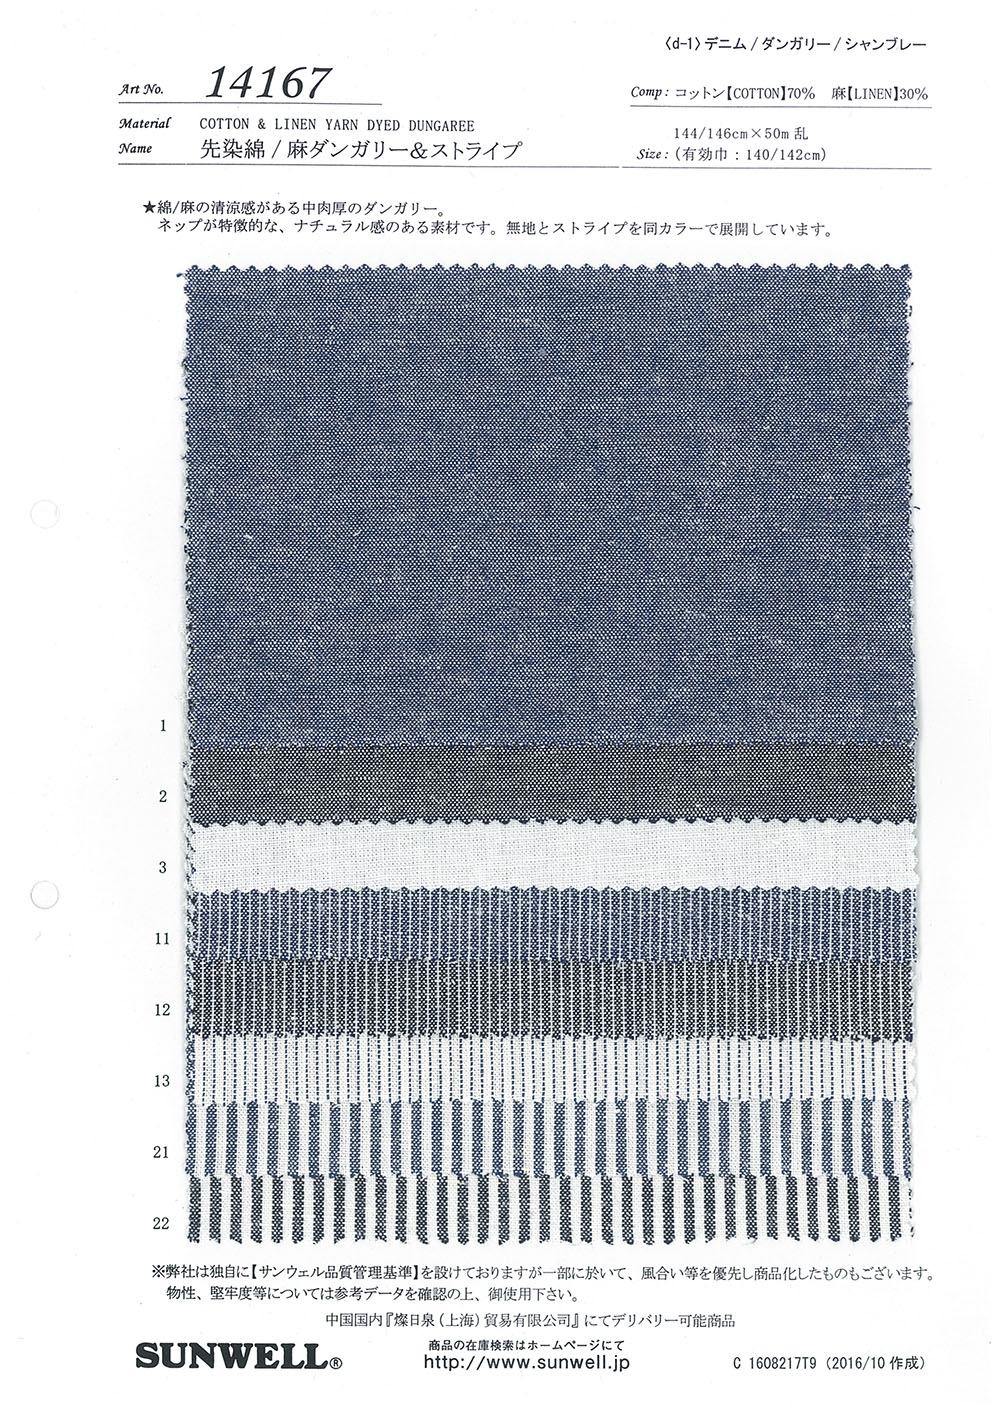 14167 Peto De Algodón/lino Teñido En Hilo Y Rayas[Fabrica Textil] SUNWELL